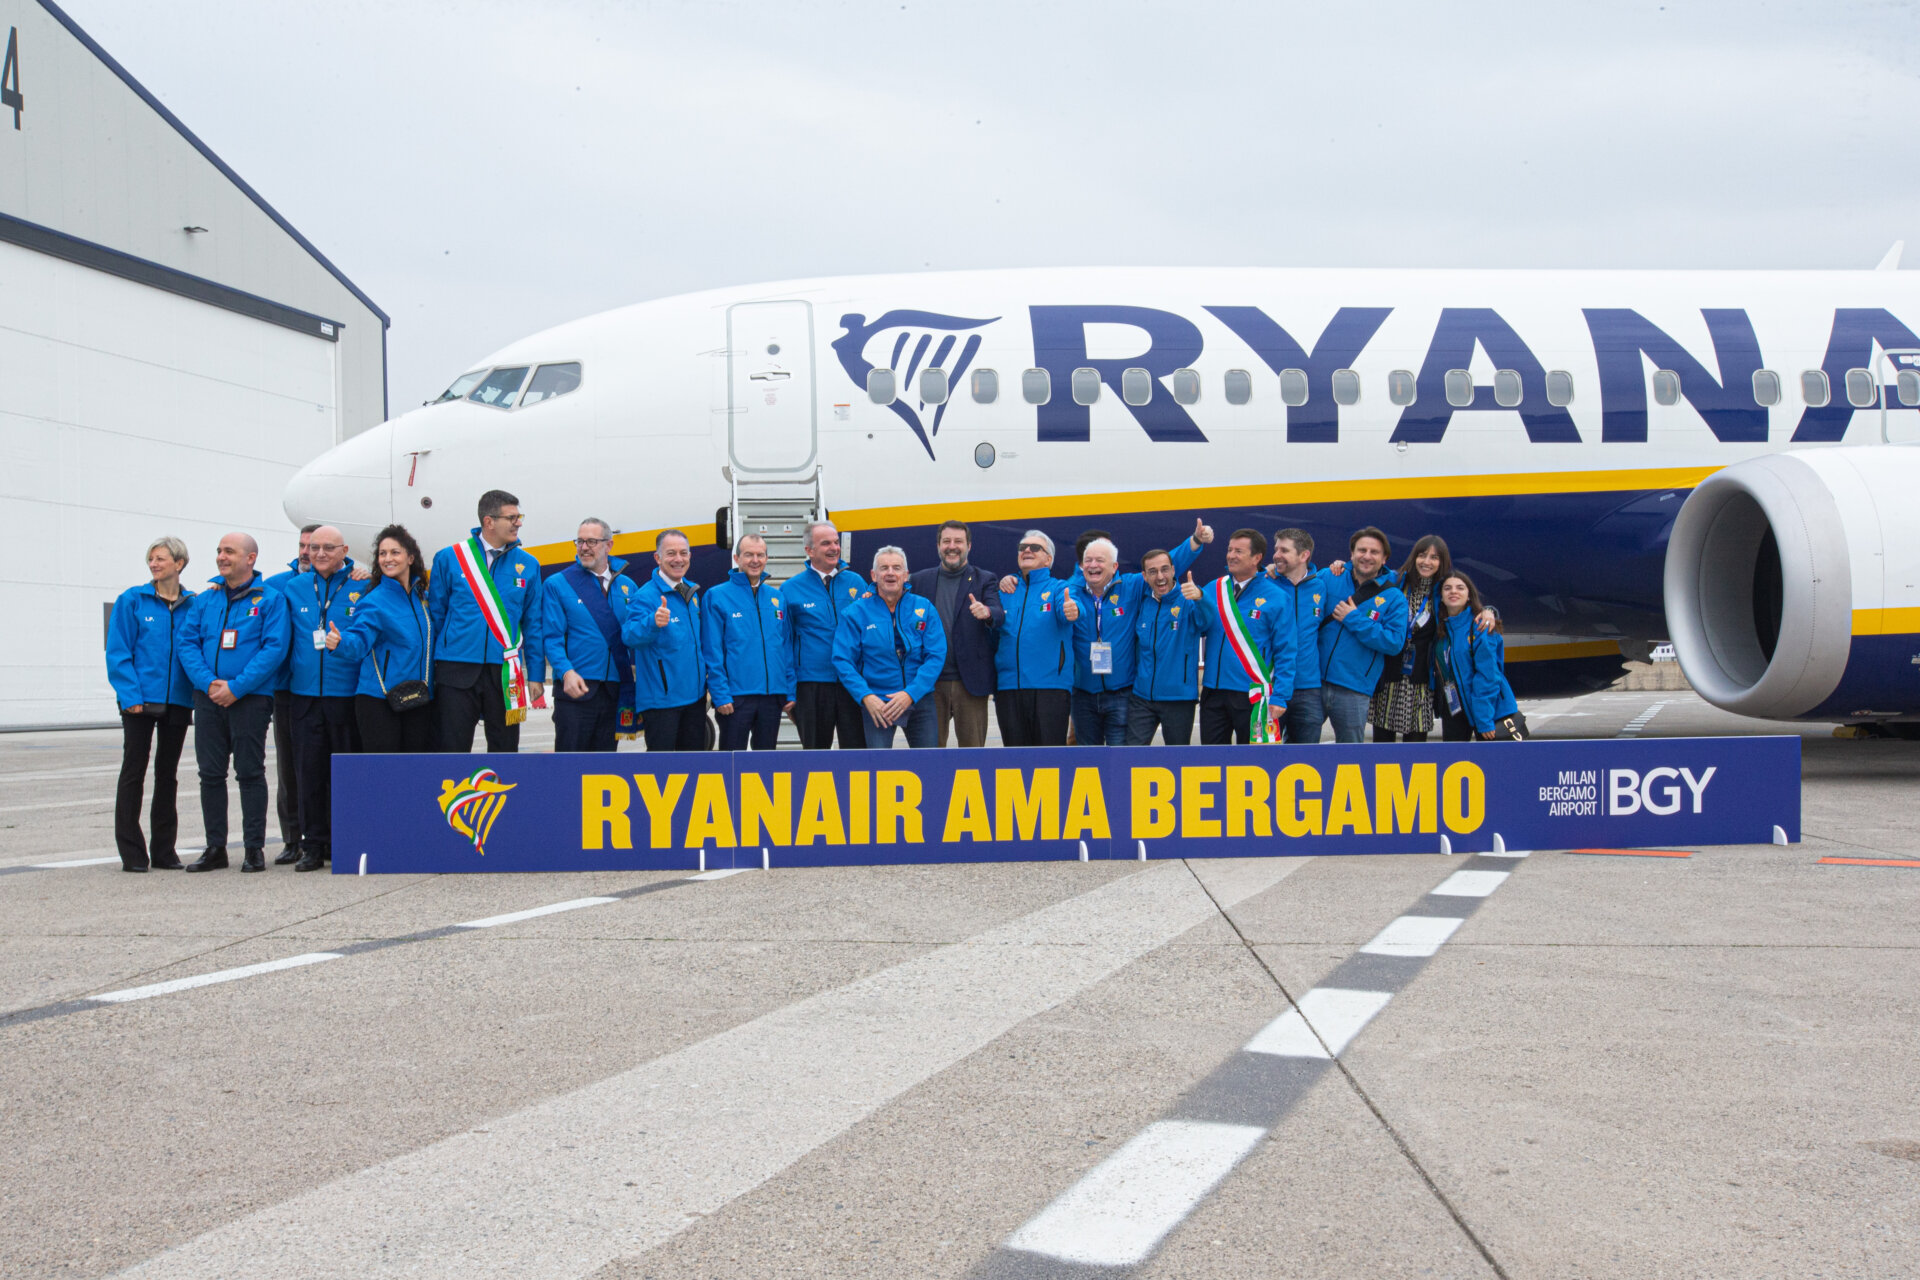 Gruppo Ryanair BGY con aereo